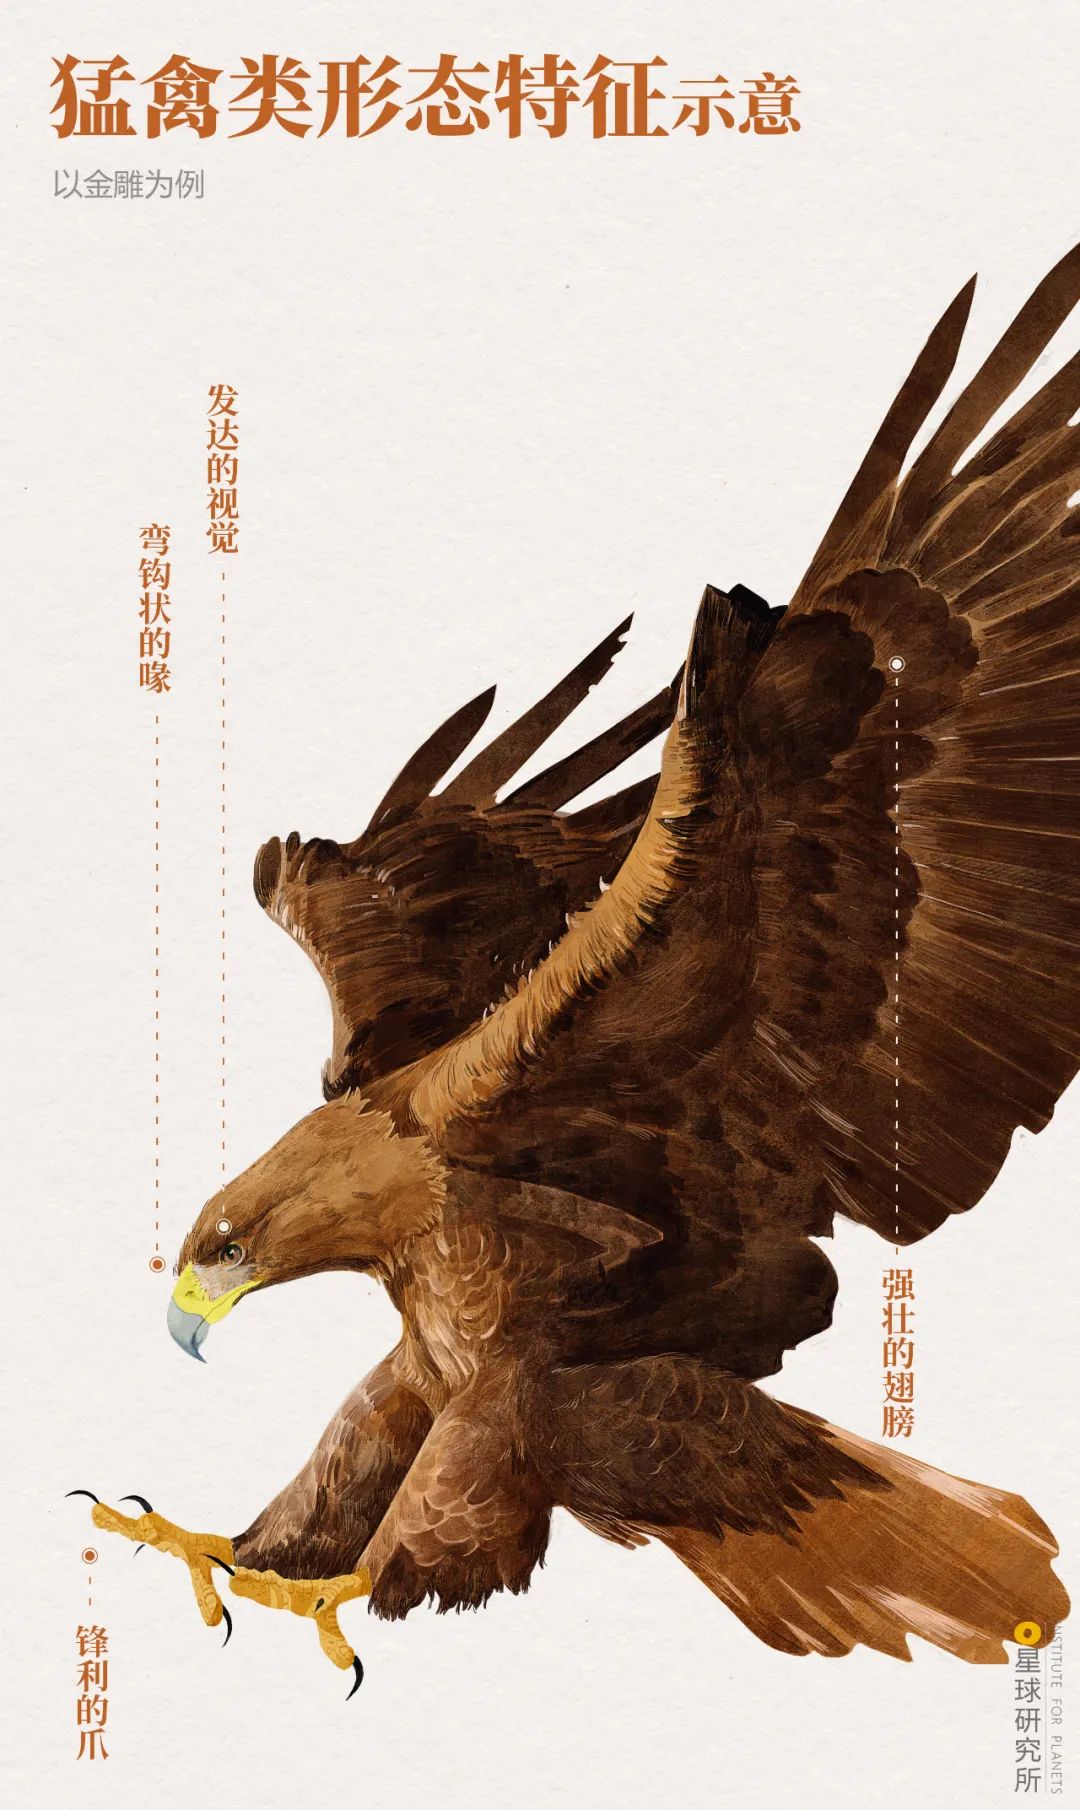 中國的鳥類 有多美 星球研究所 Mdeditor